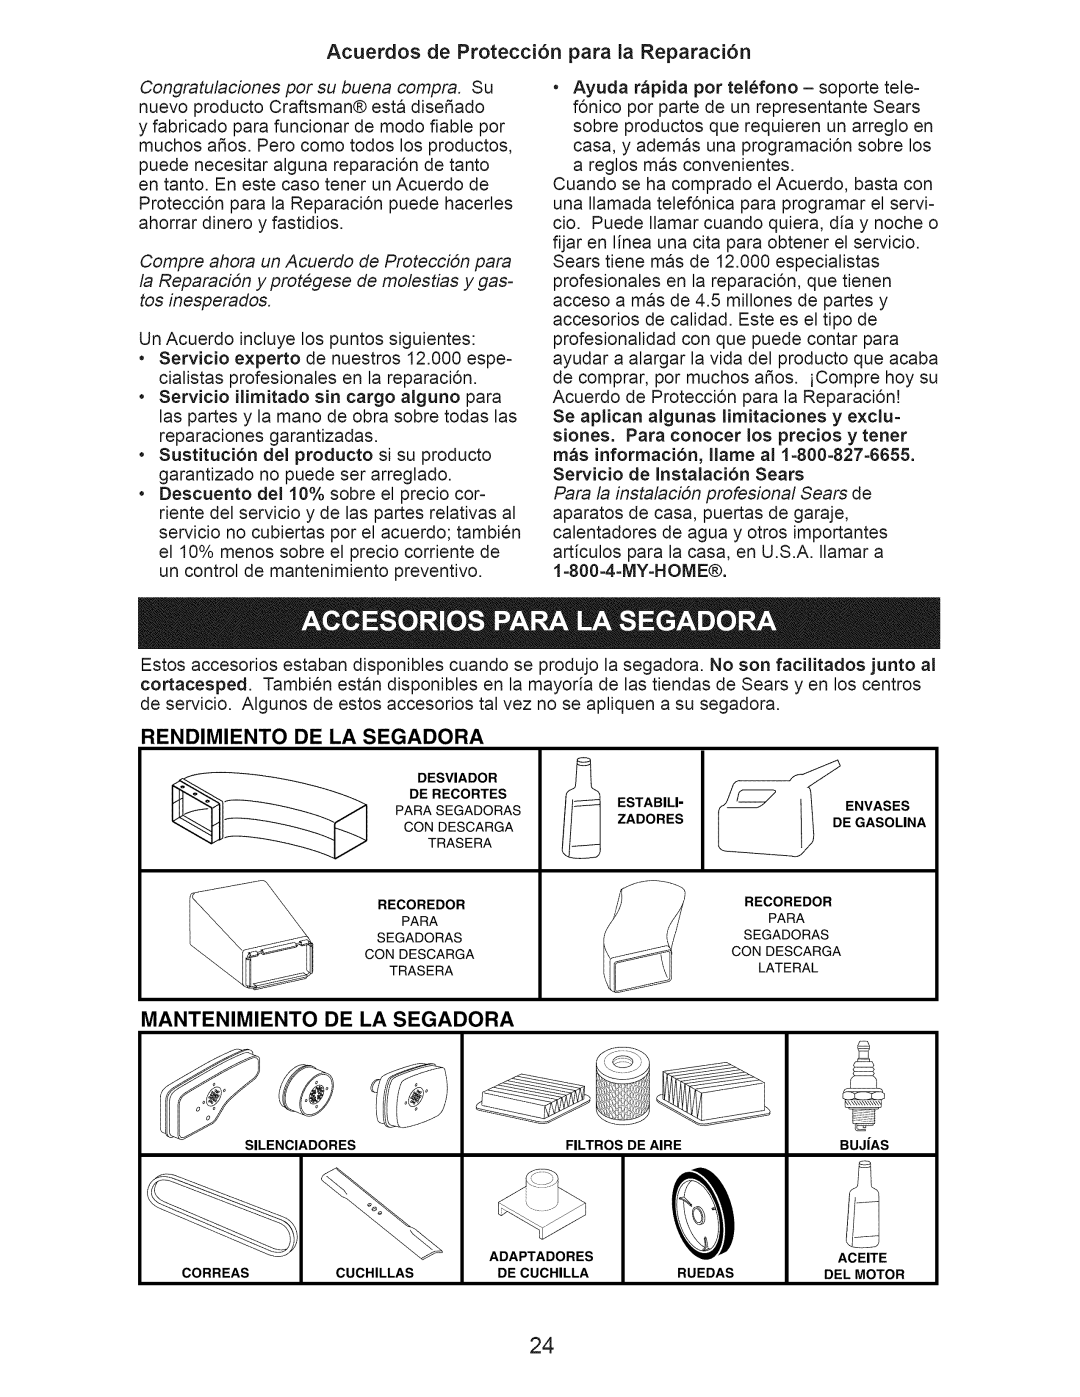 Craftsman 917.376536 Acuerdos de Protecci6n para la Reparaci6n, Rendimiento De La Segadora, Mantenimiento De La Segadora 